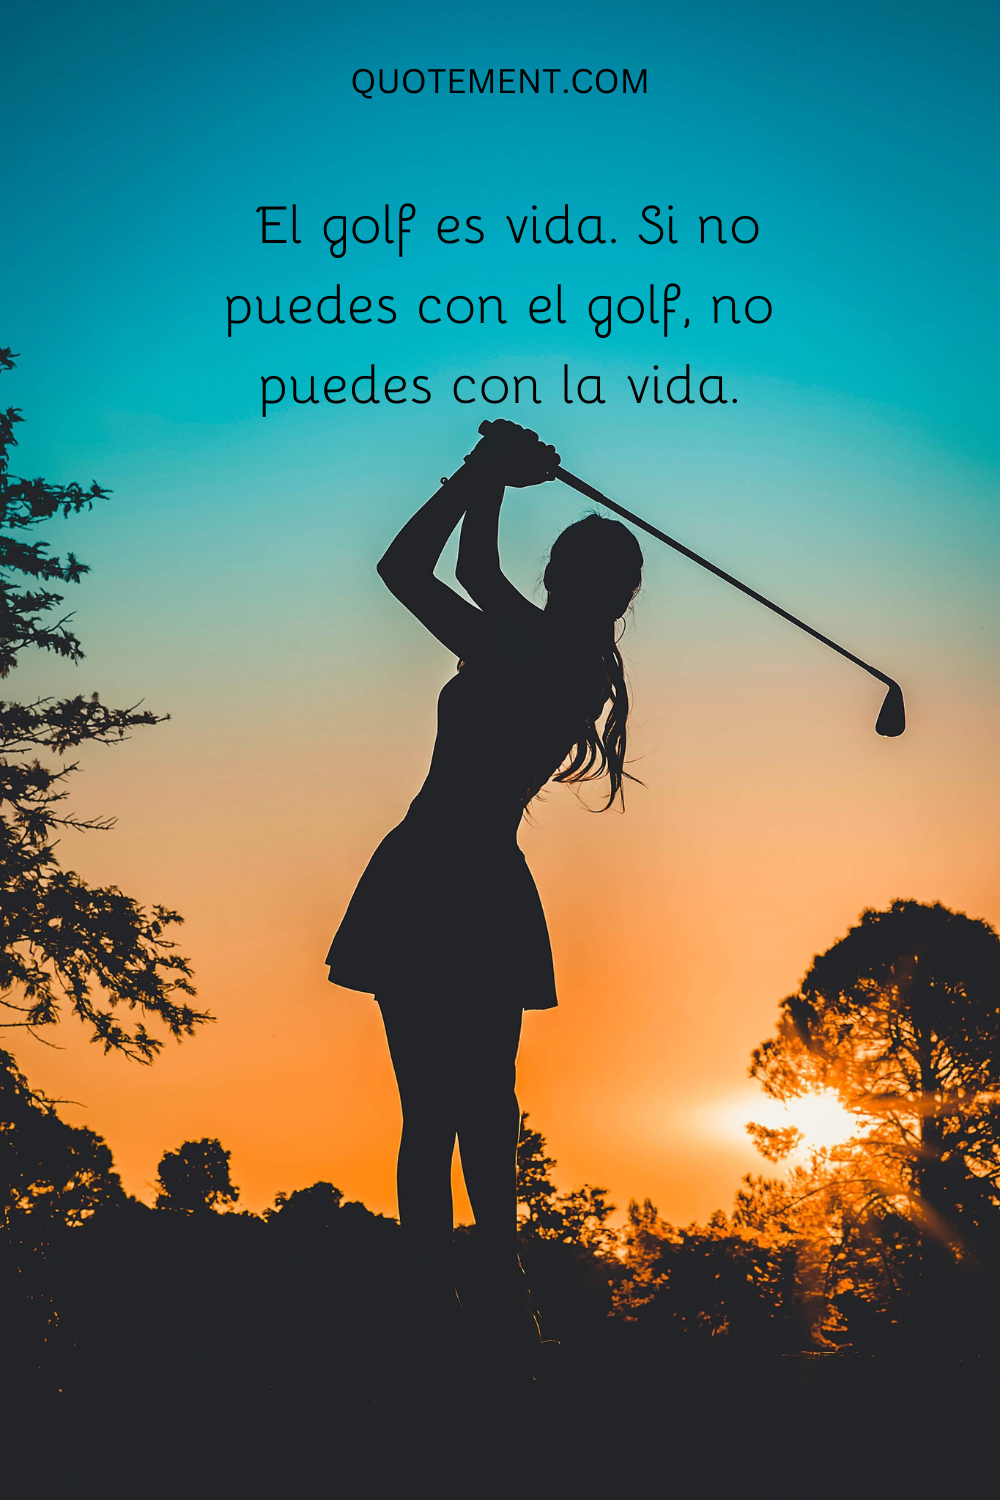 El golf es vida. Si no puedes con el golf, no puedes con la vida.